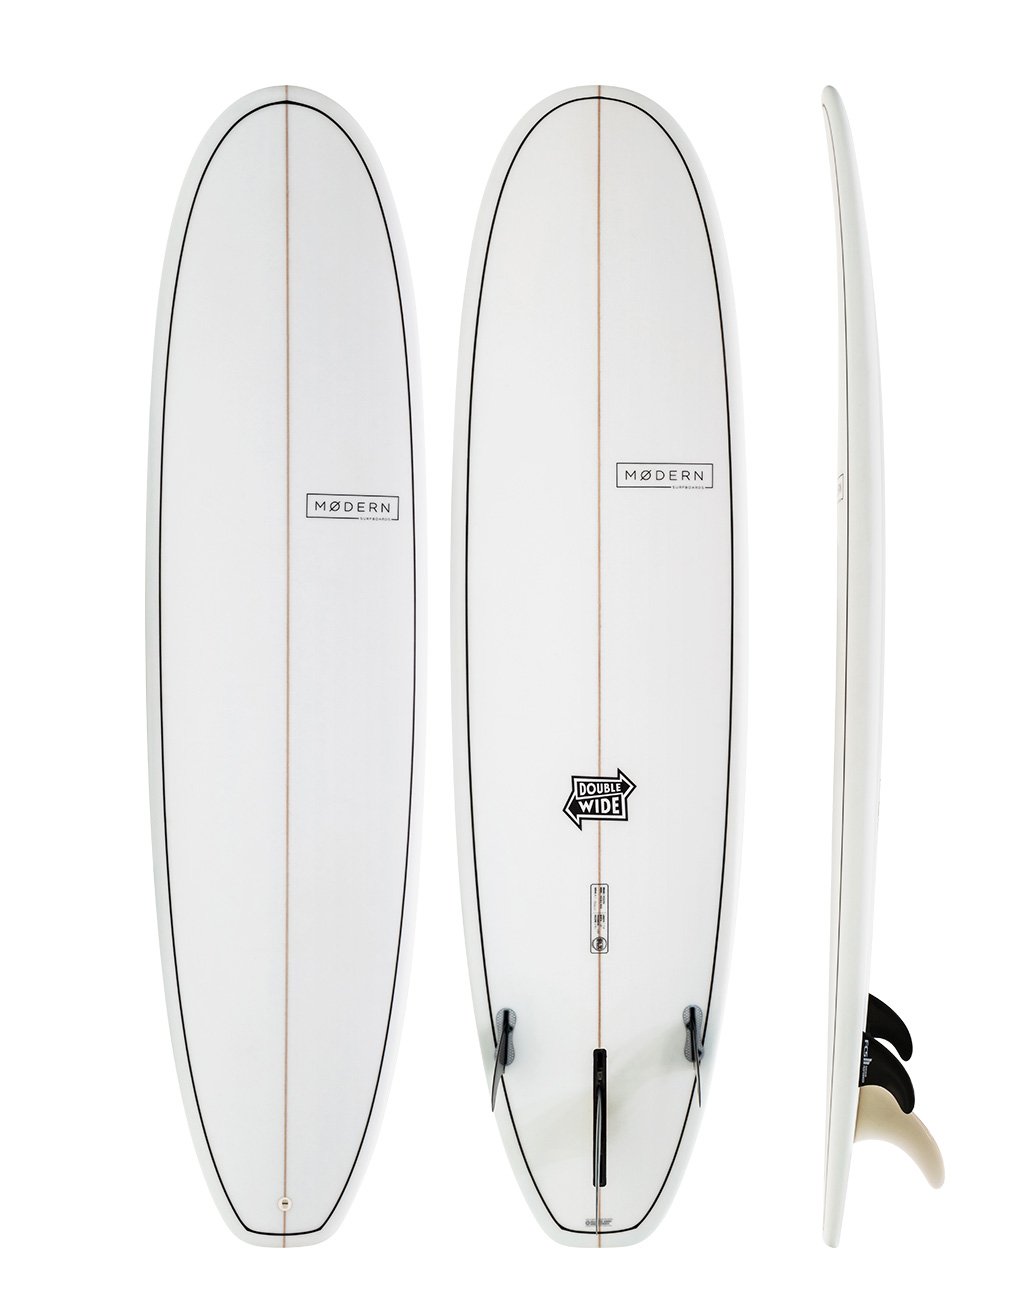 Modern Surfboards - Double Wide - mid length surfboard